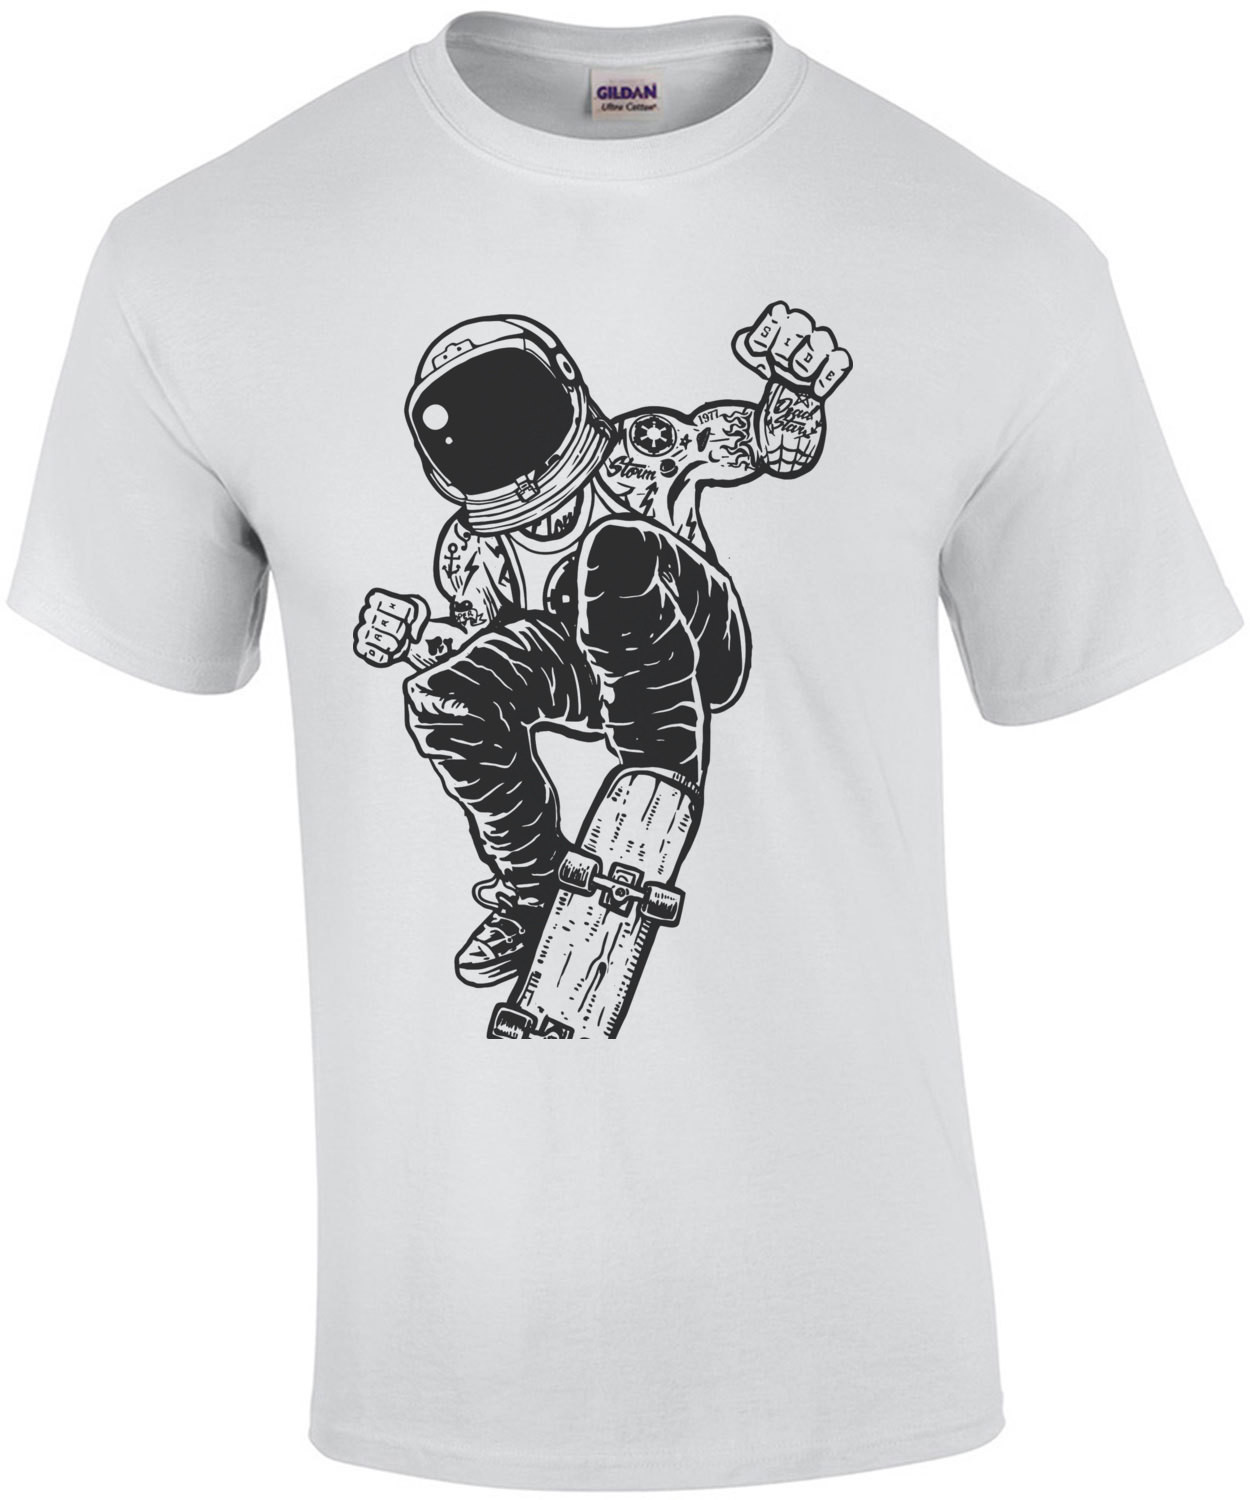 Skateboarding Astronaut T-Shirt